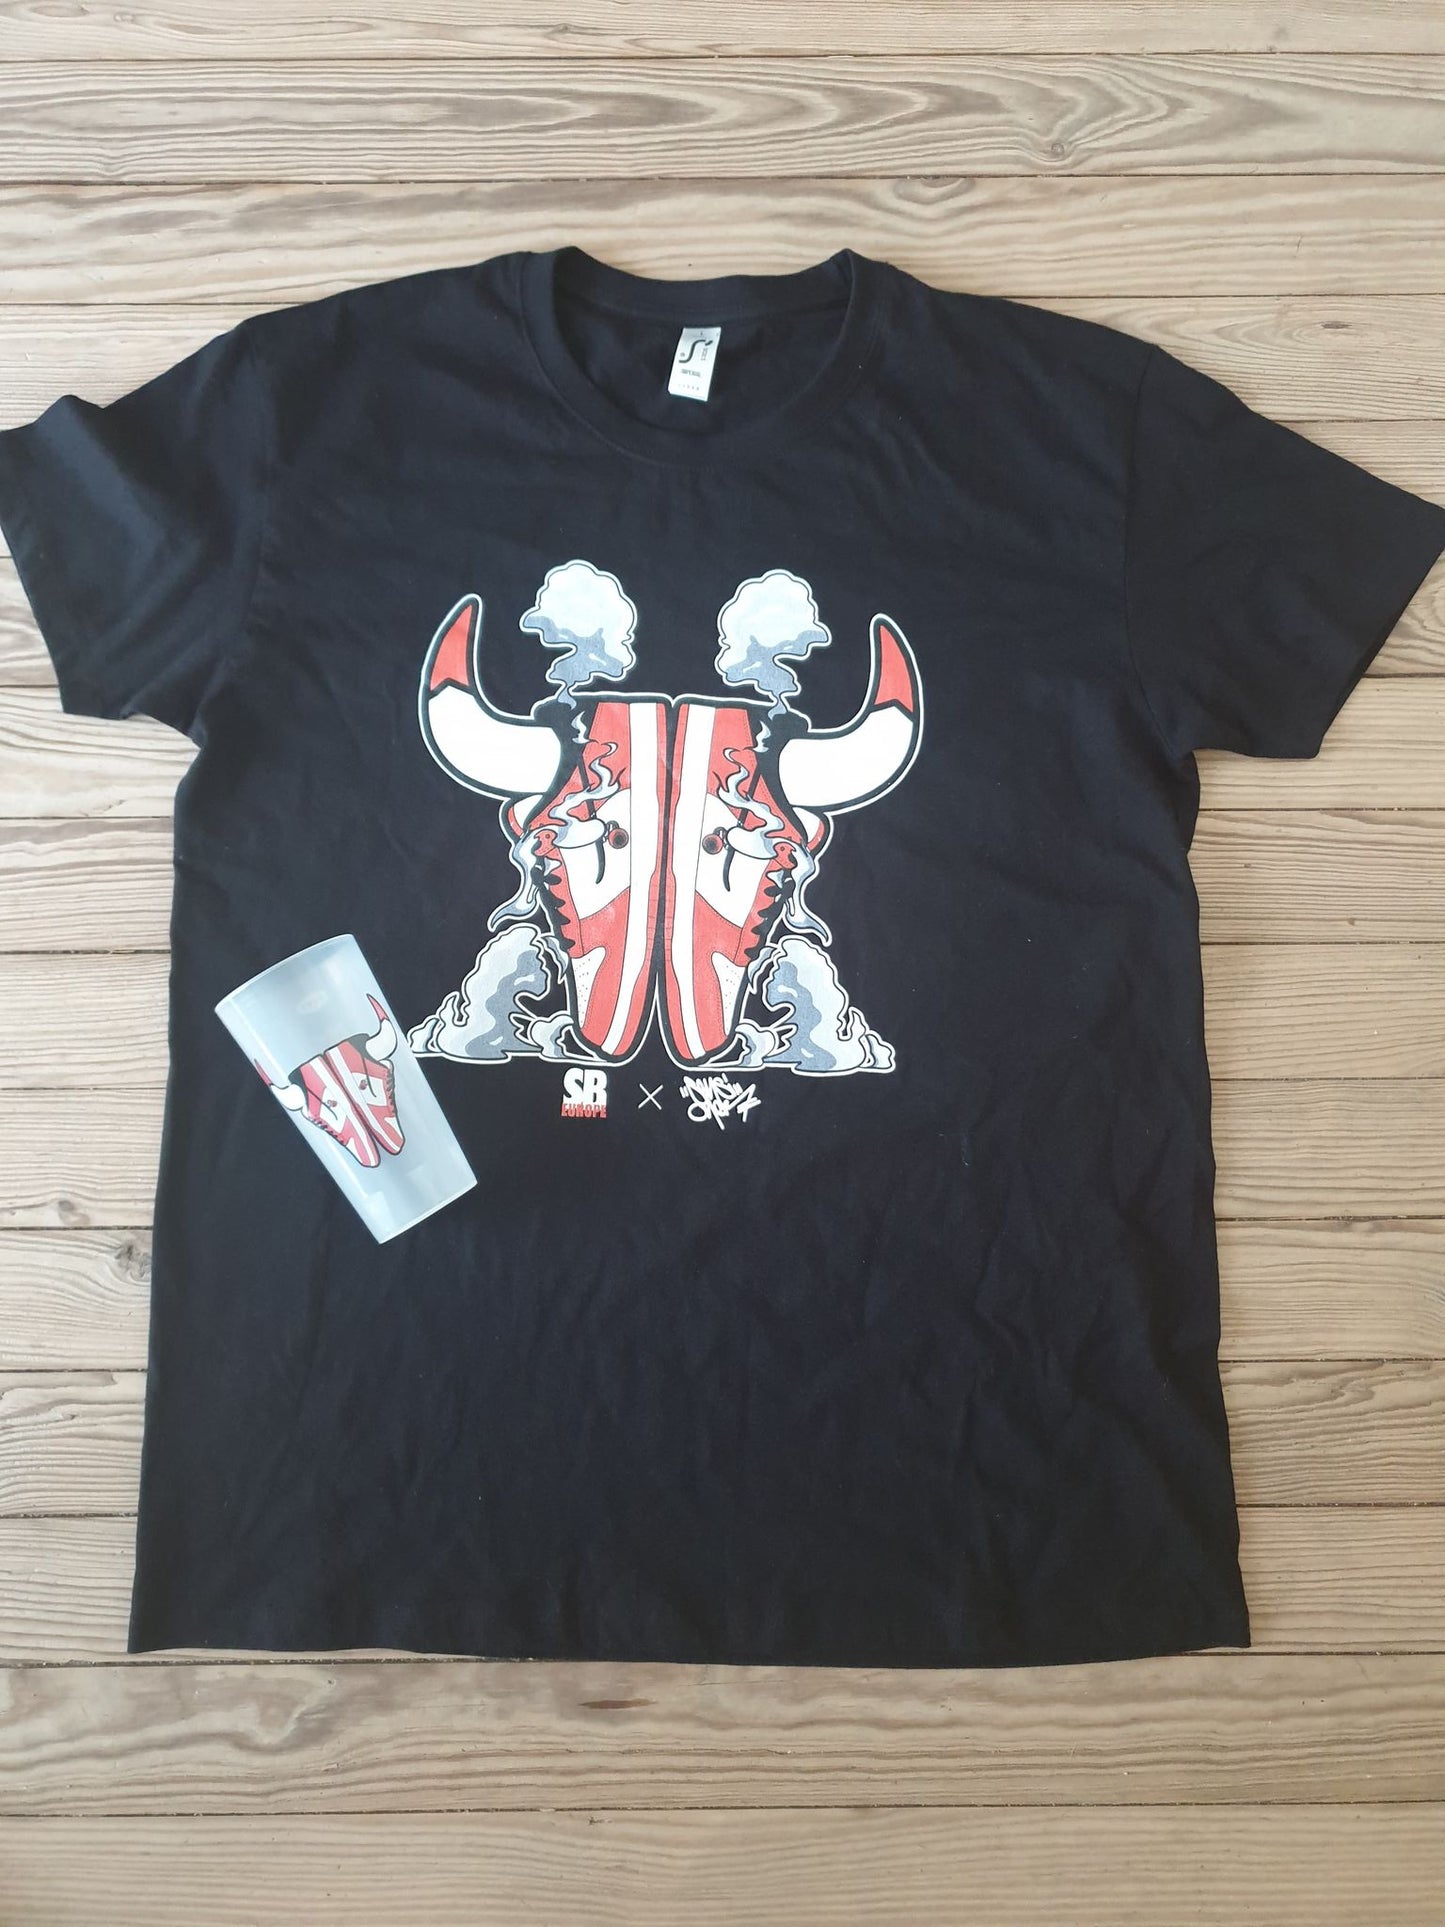 BullSkate (Cup + T-shirt Pack)